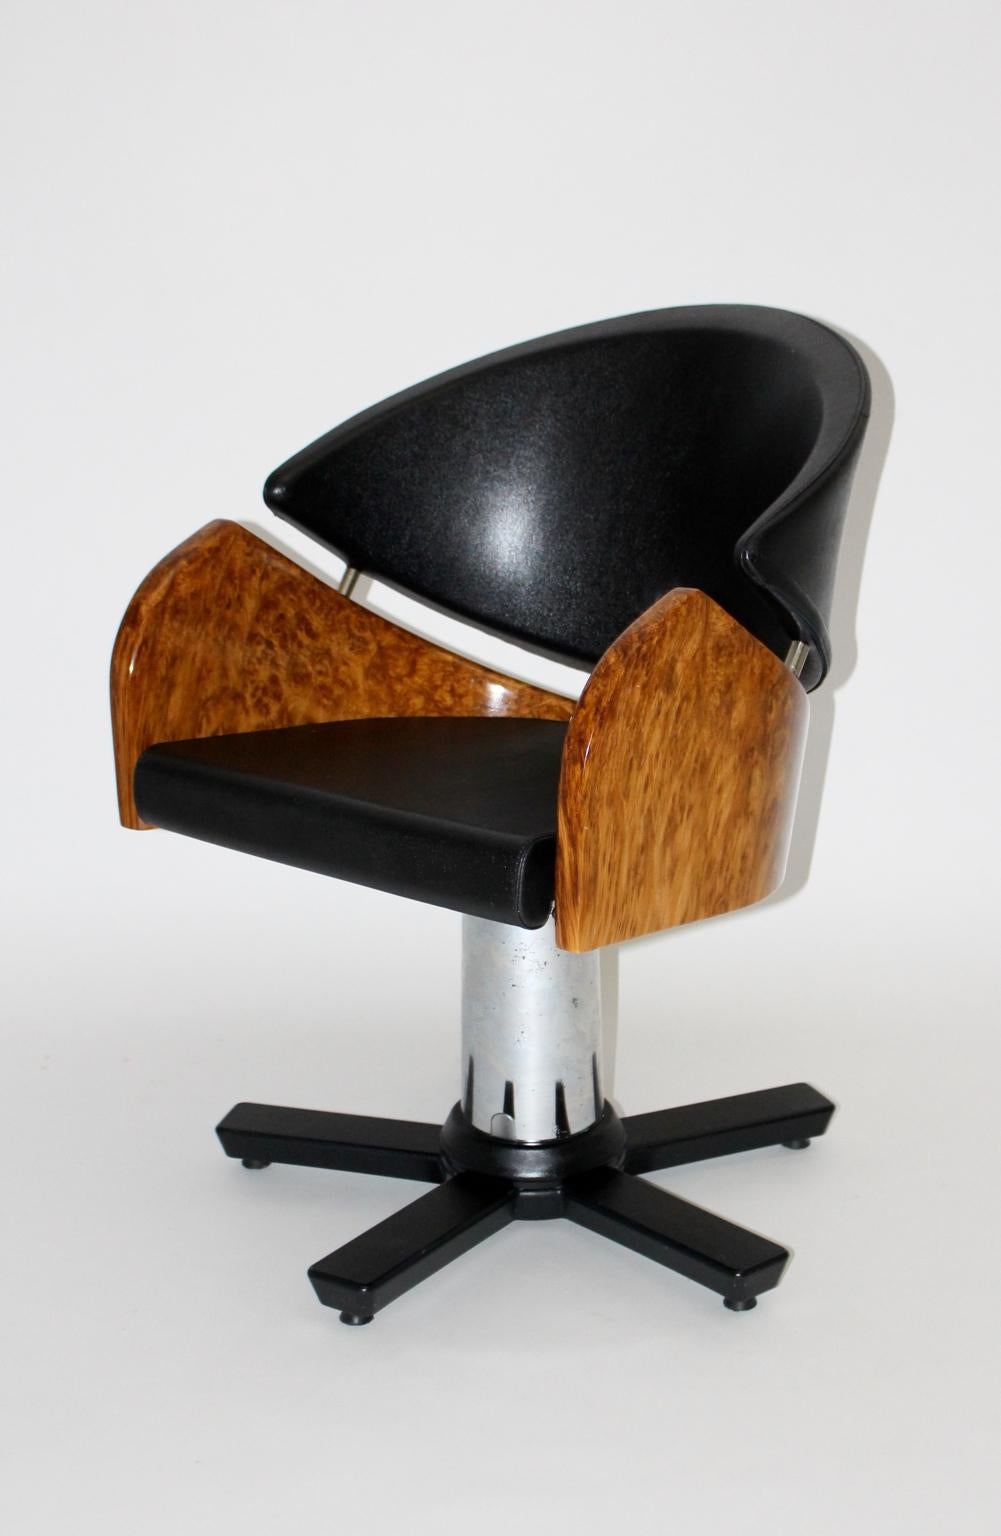 Moderner Drehsessel im Memphis-Stil in Schwarz und Braun, zugeschrieben Matheo Grassi, Italien. Der Sessel besteht aus Stahl und verchromtem Aluminium, schwarzem Kunststoff und Walnussimitat (Kunststoff).
Der Sitz und die Rückenlehne waren mit